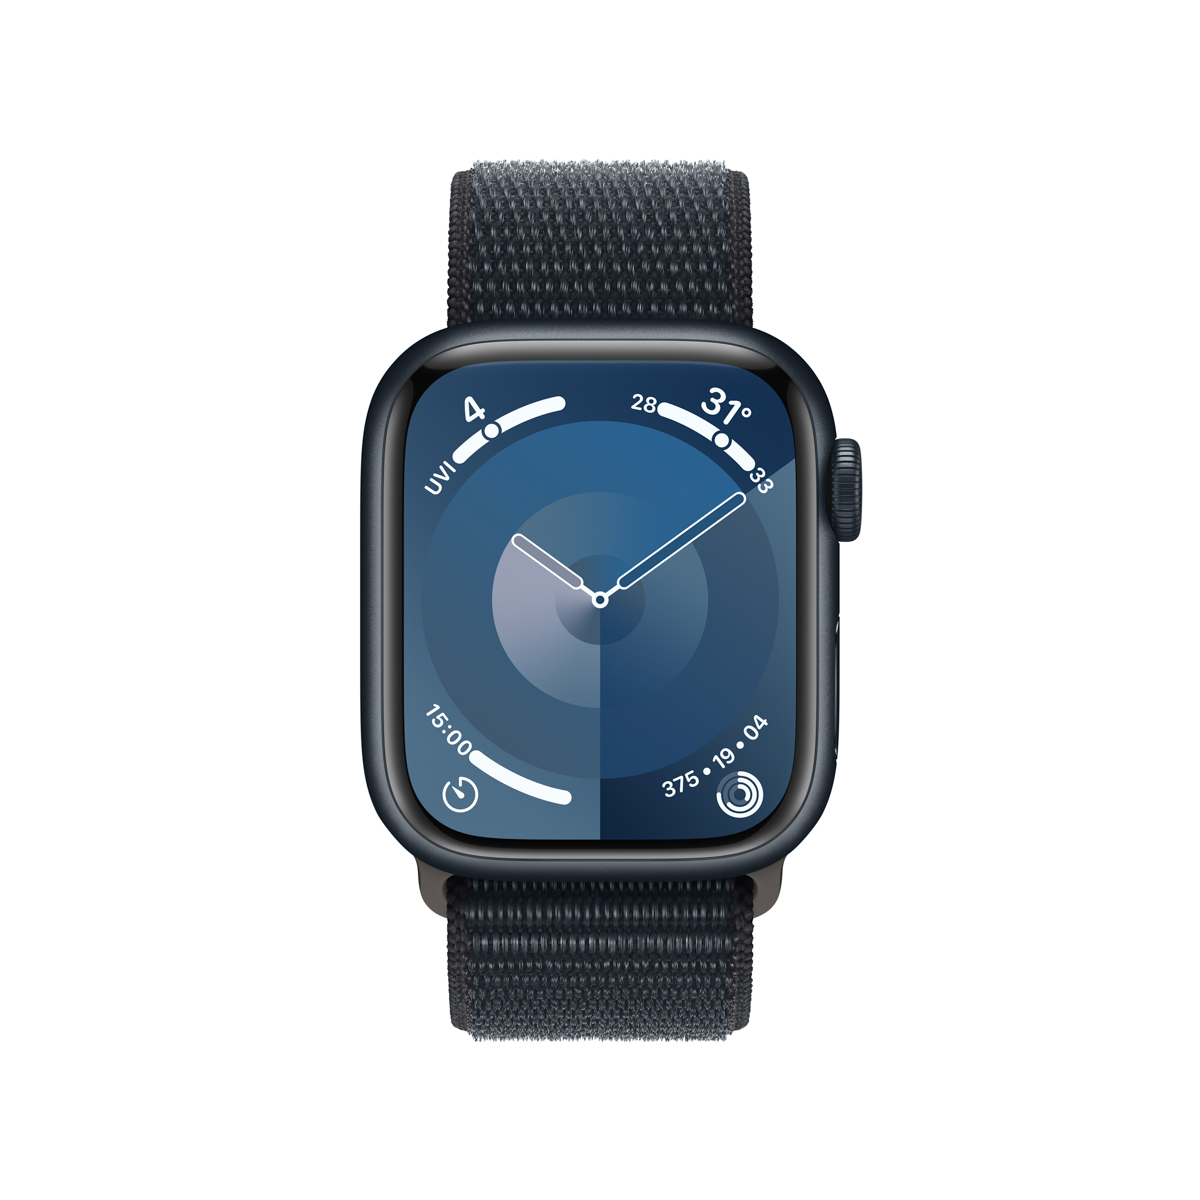 Apple Watch Series 9 sở hữu vi xử lý S9 mới. Ảnh: Apple.com